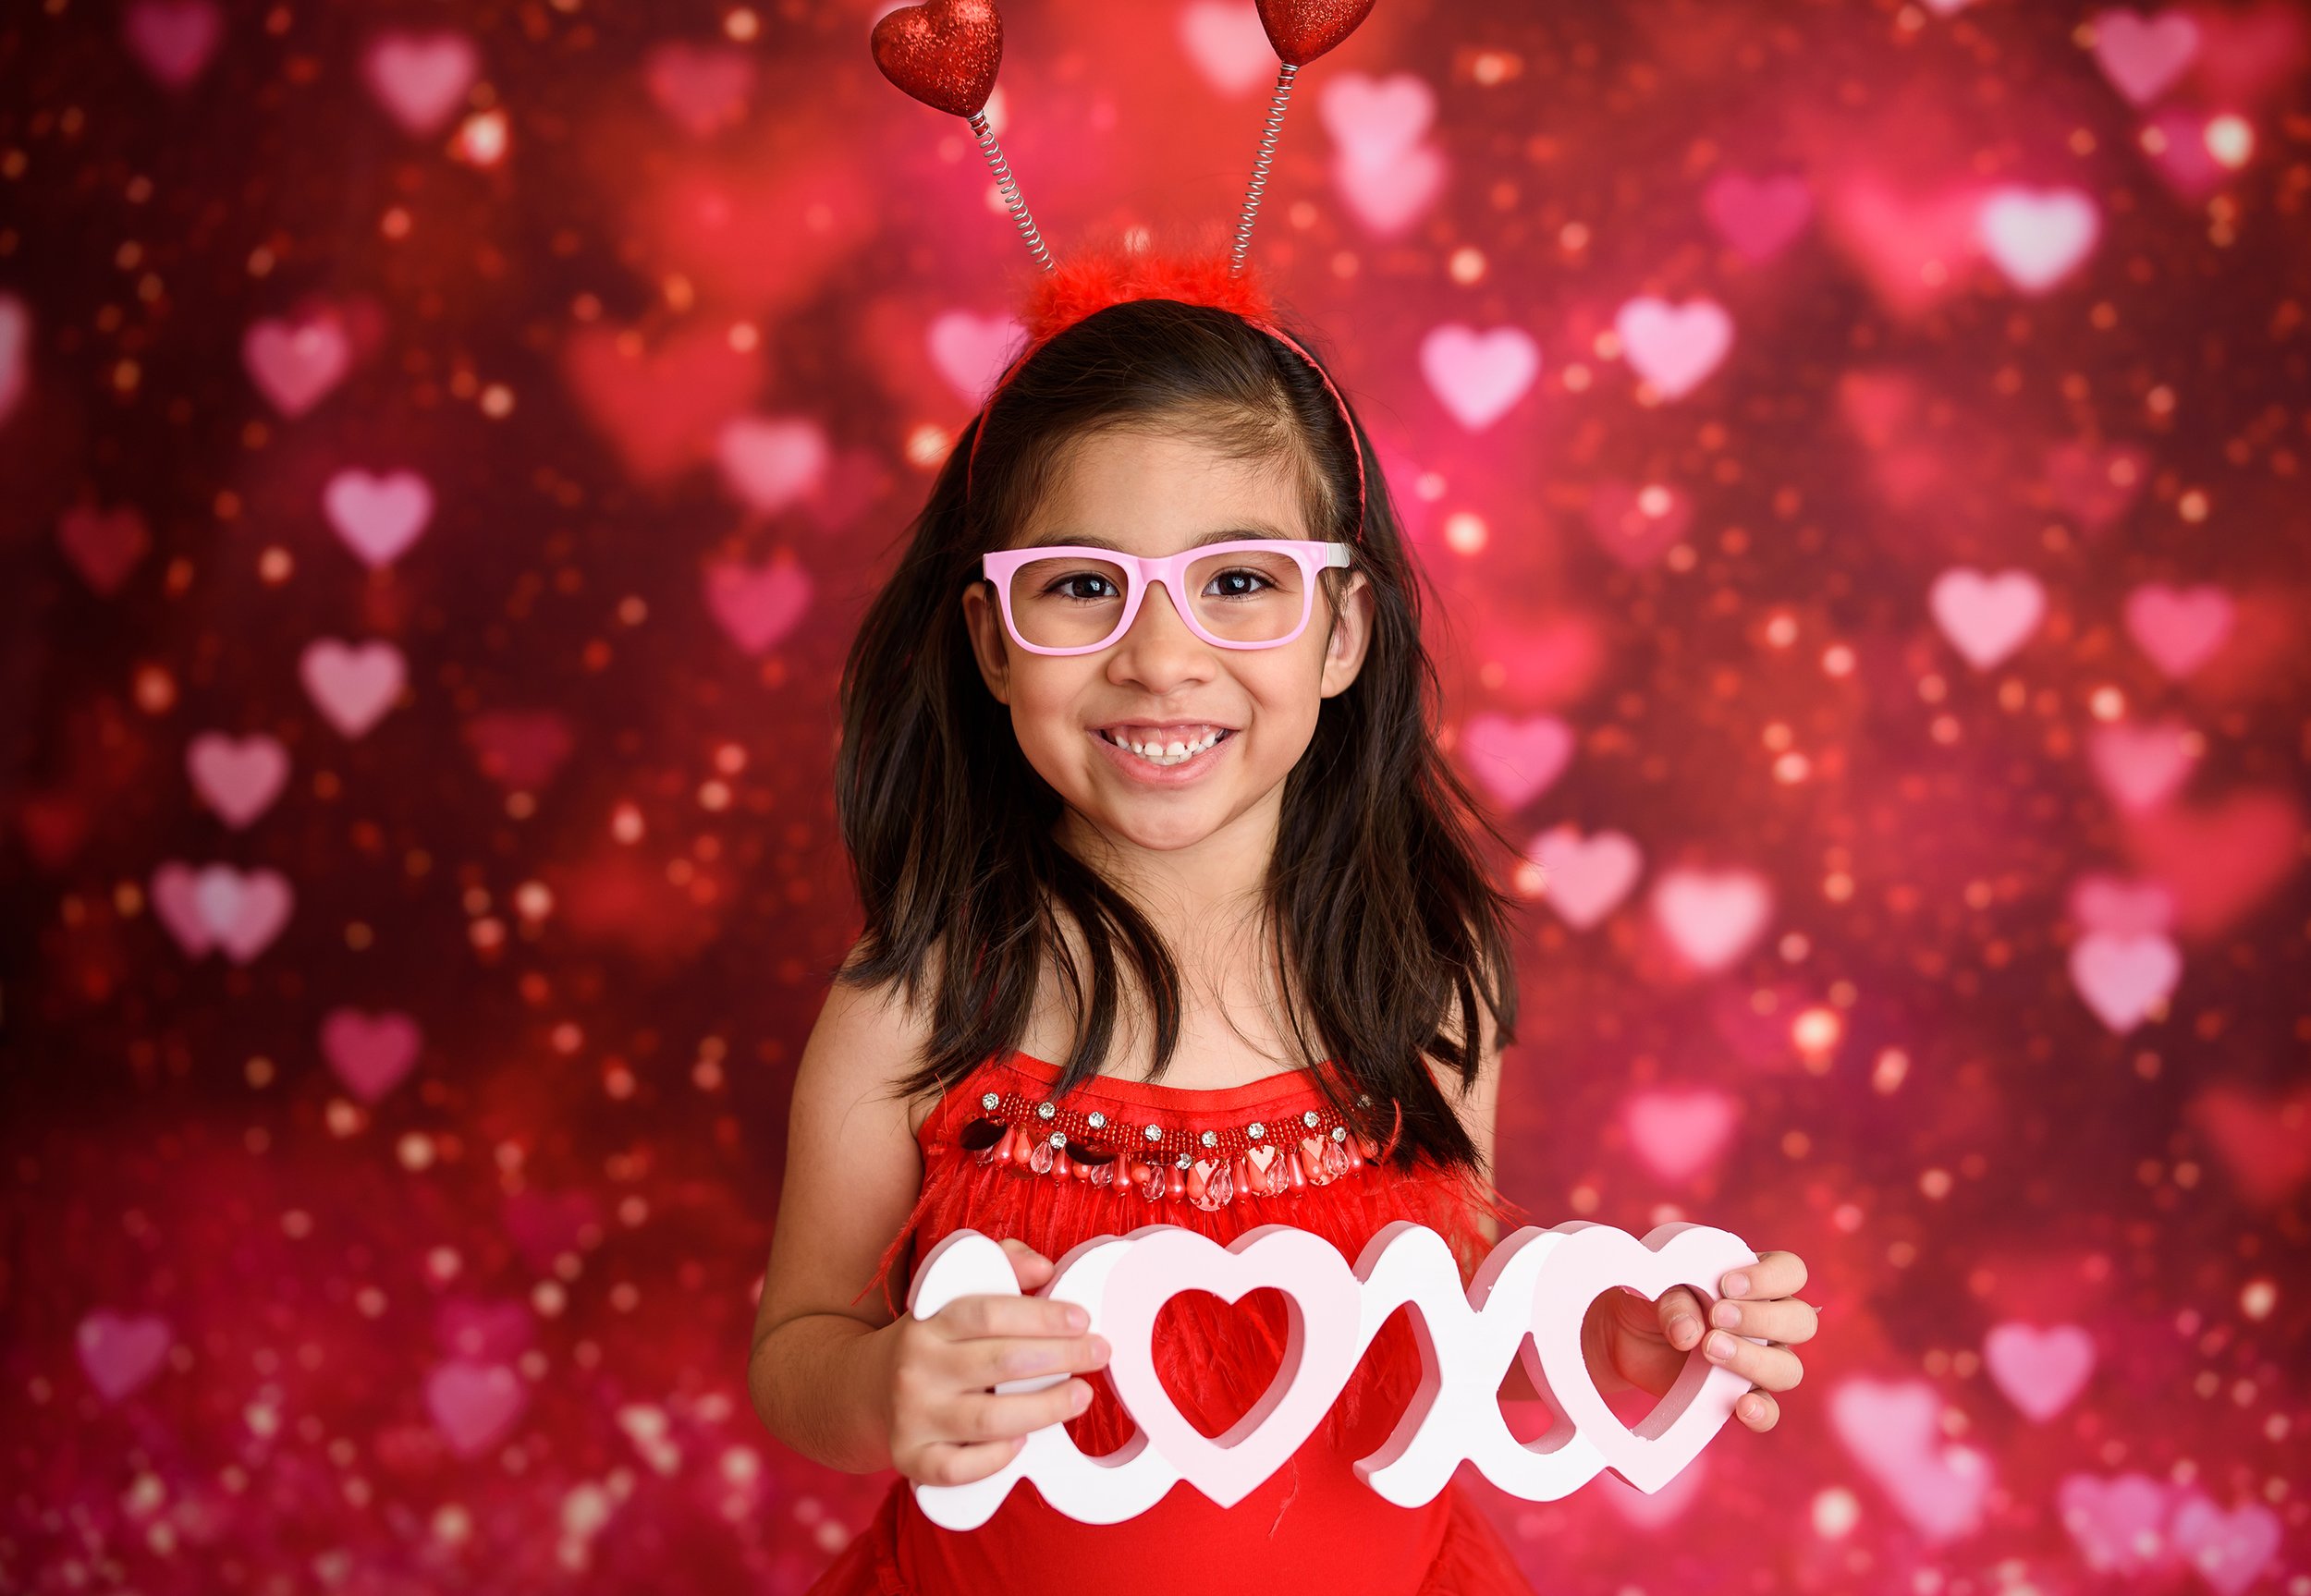 valentines xoxo sign hearts.jpg